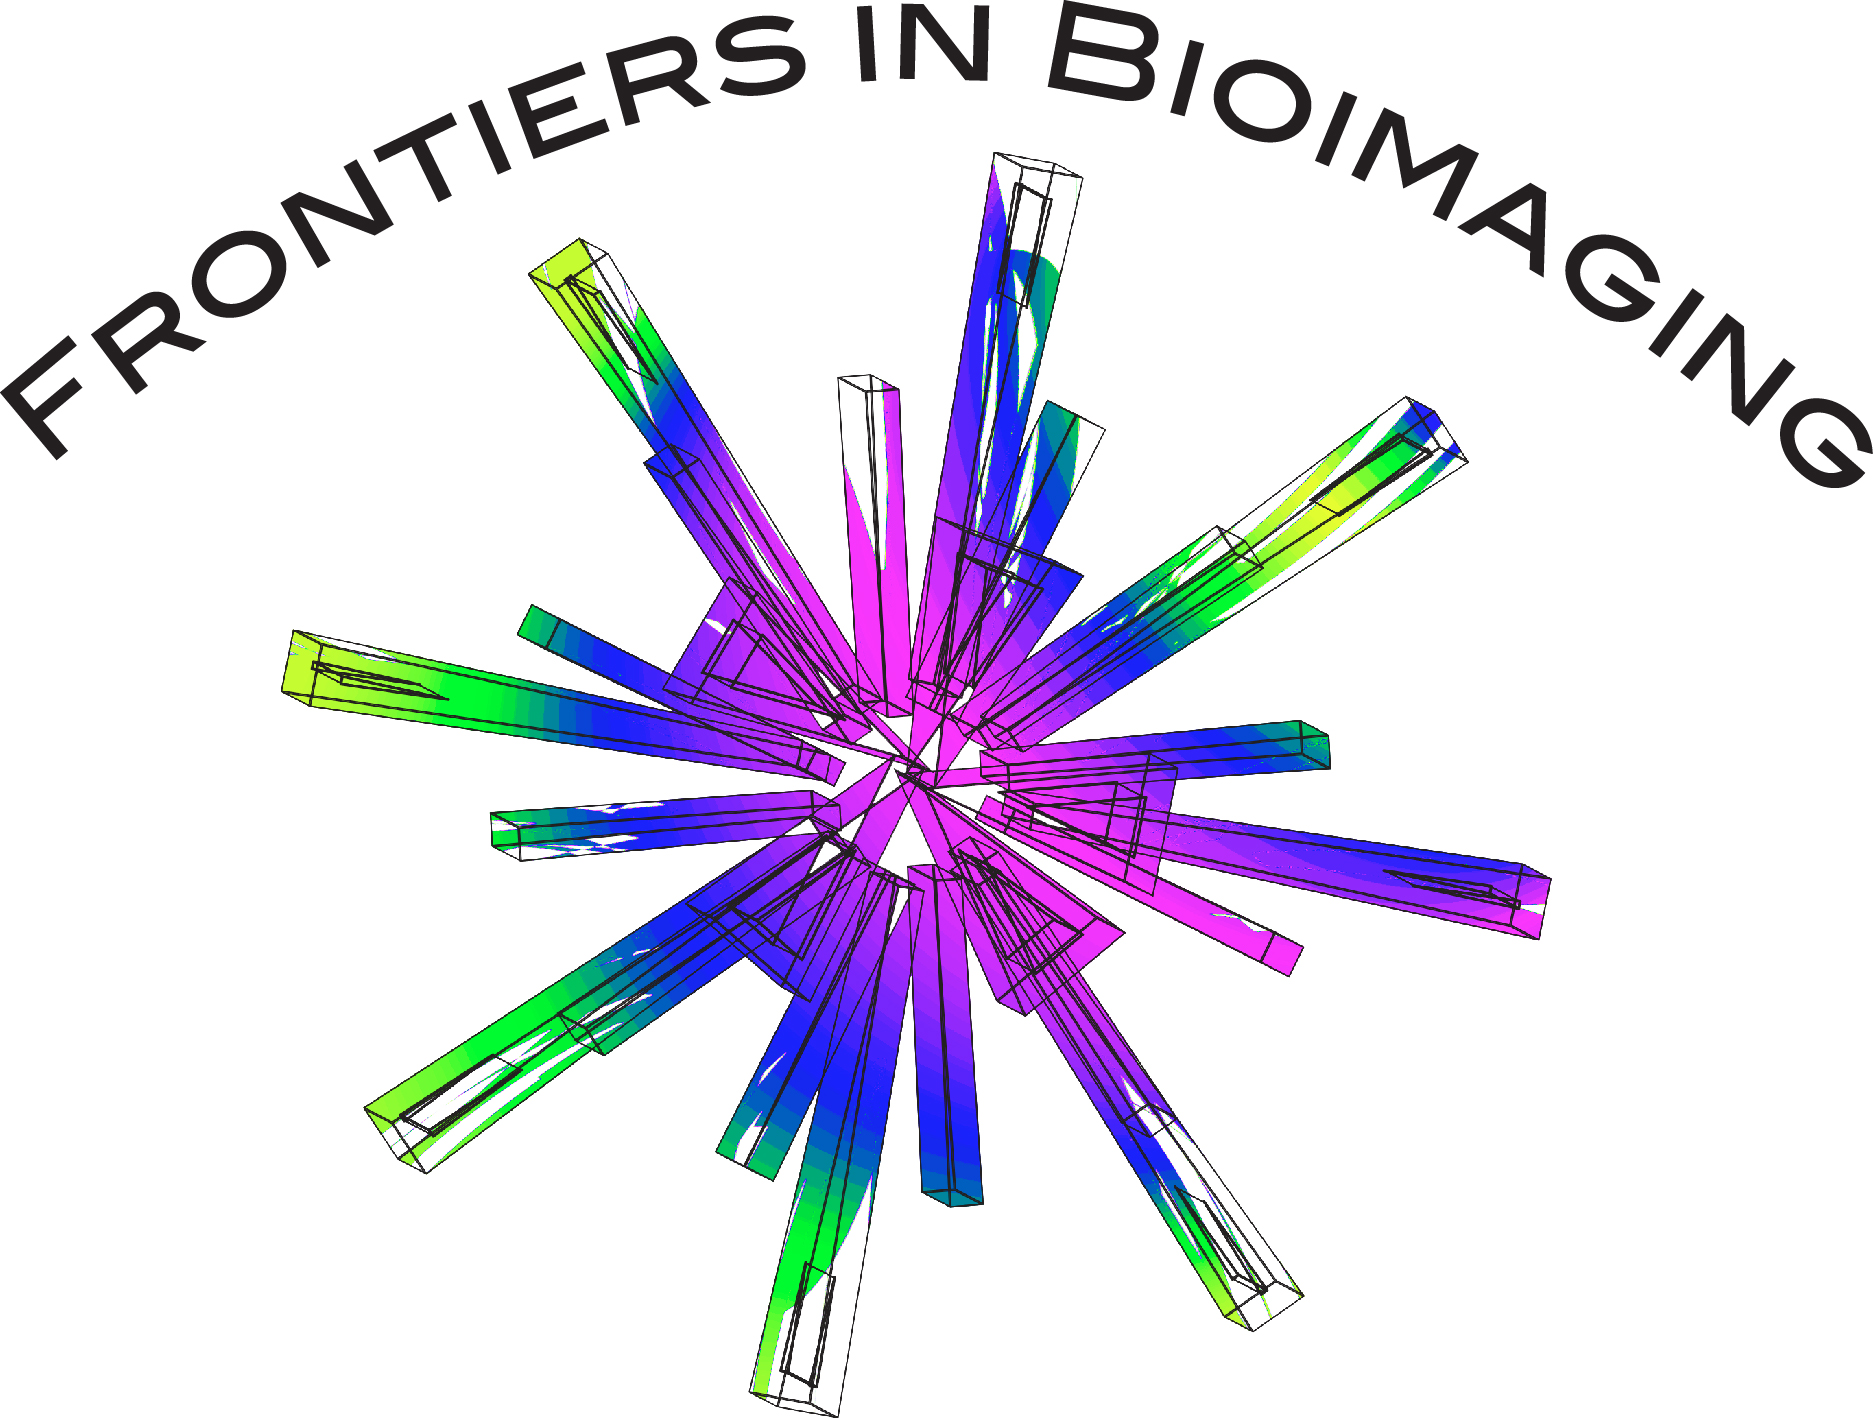 Frontiers in Bioimaging - logo 3.jpg